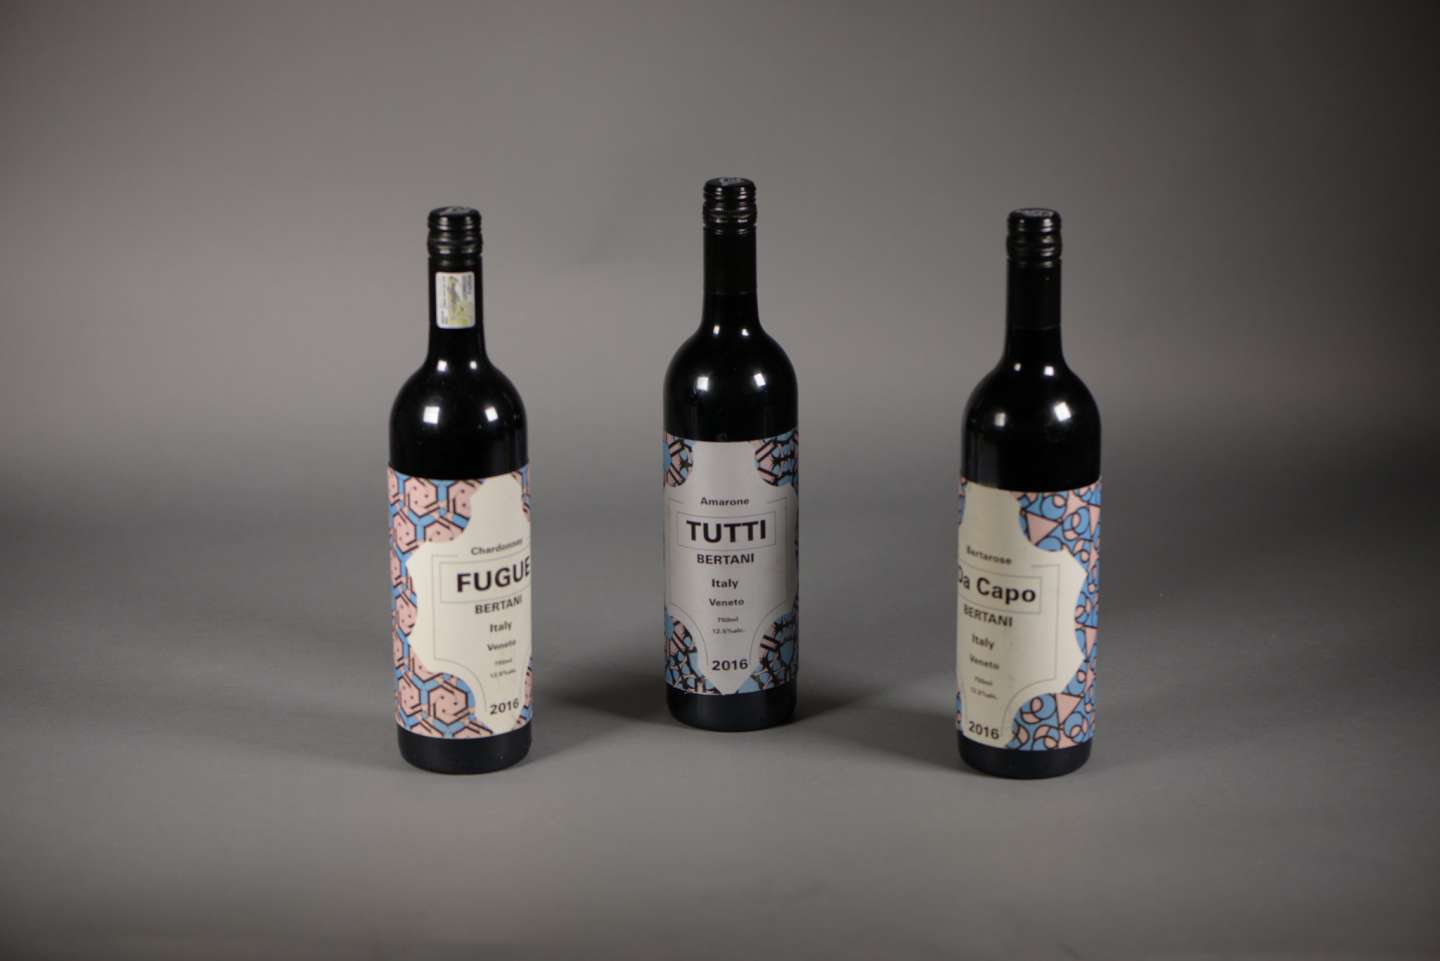 Pattern wine bottles